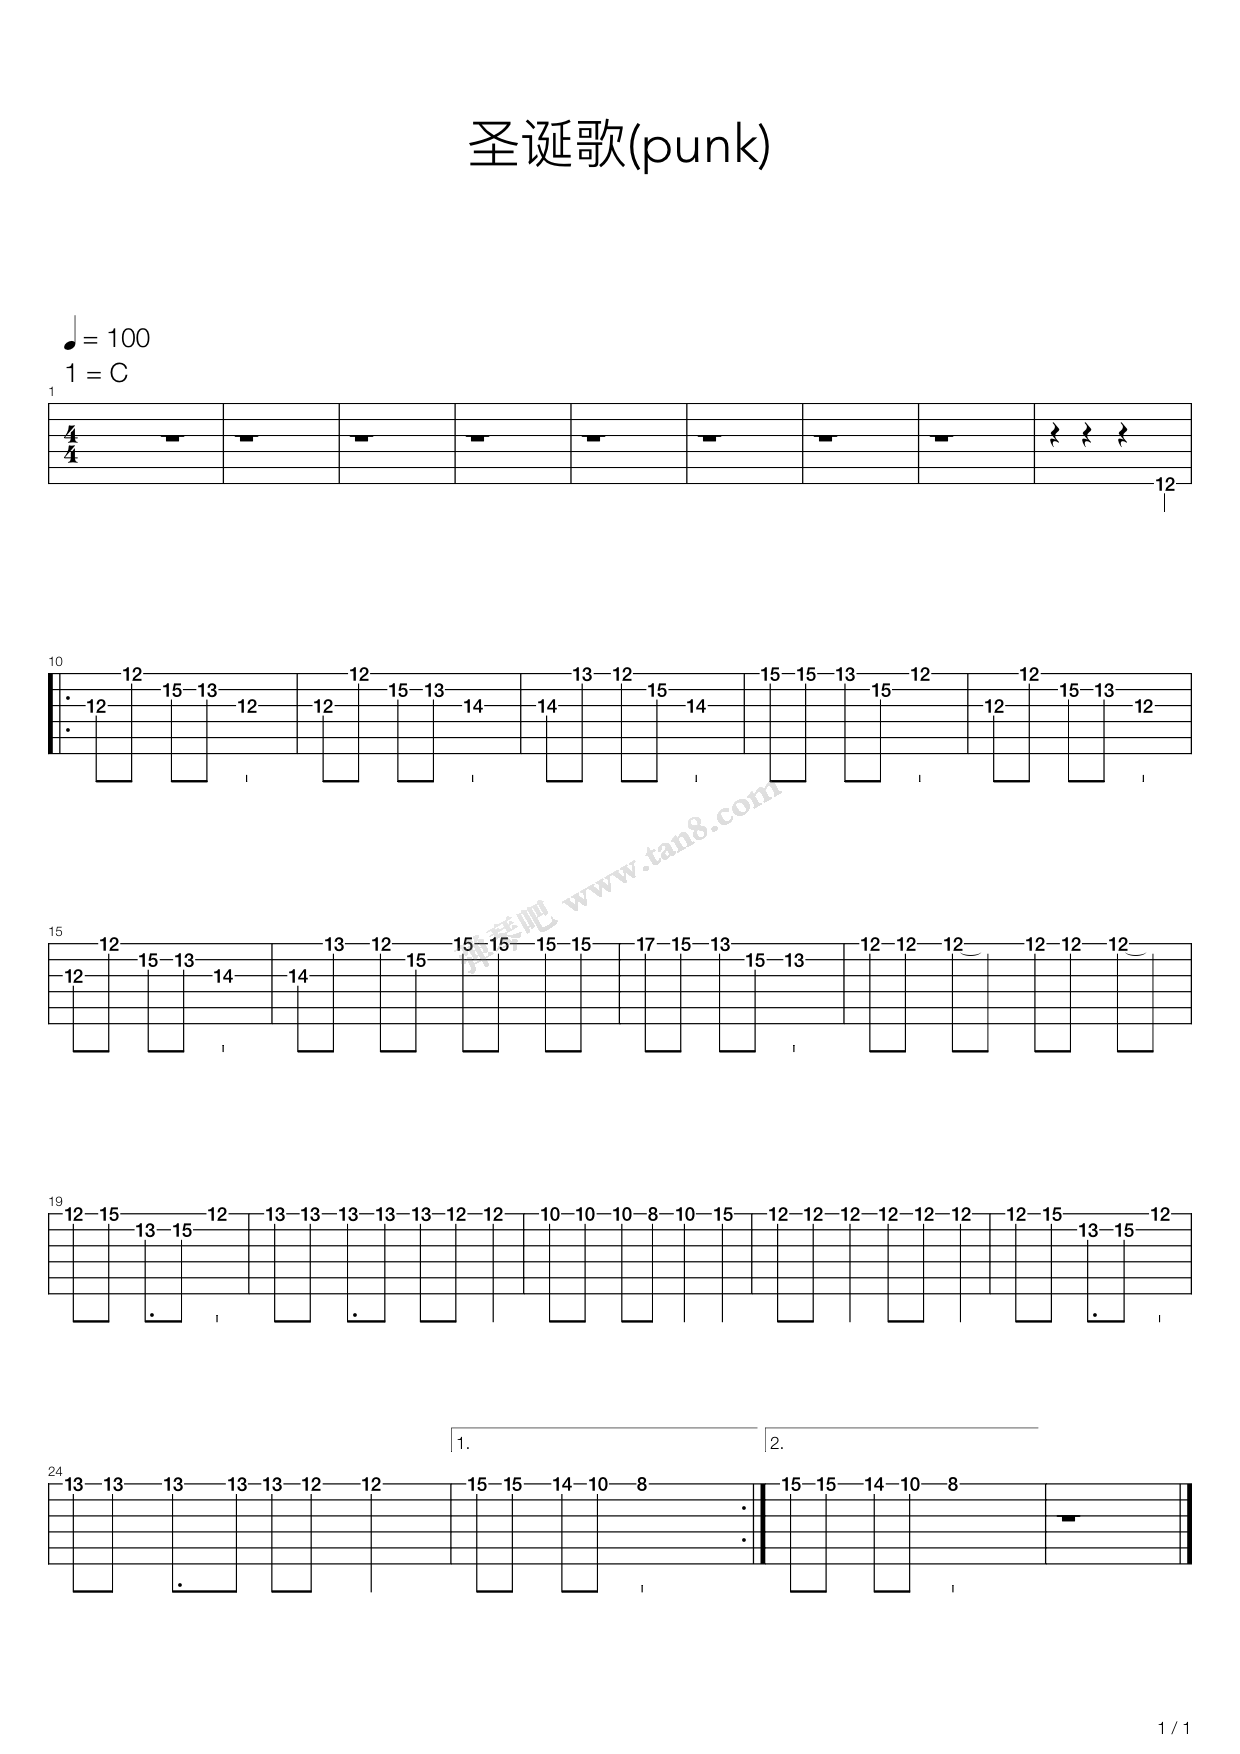 铃儿响叮当-Jingle Bells双手简谱预览1-钢琴谱文件（五线谱、双手简谱、数字谱、Midi、PDF）免费下载